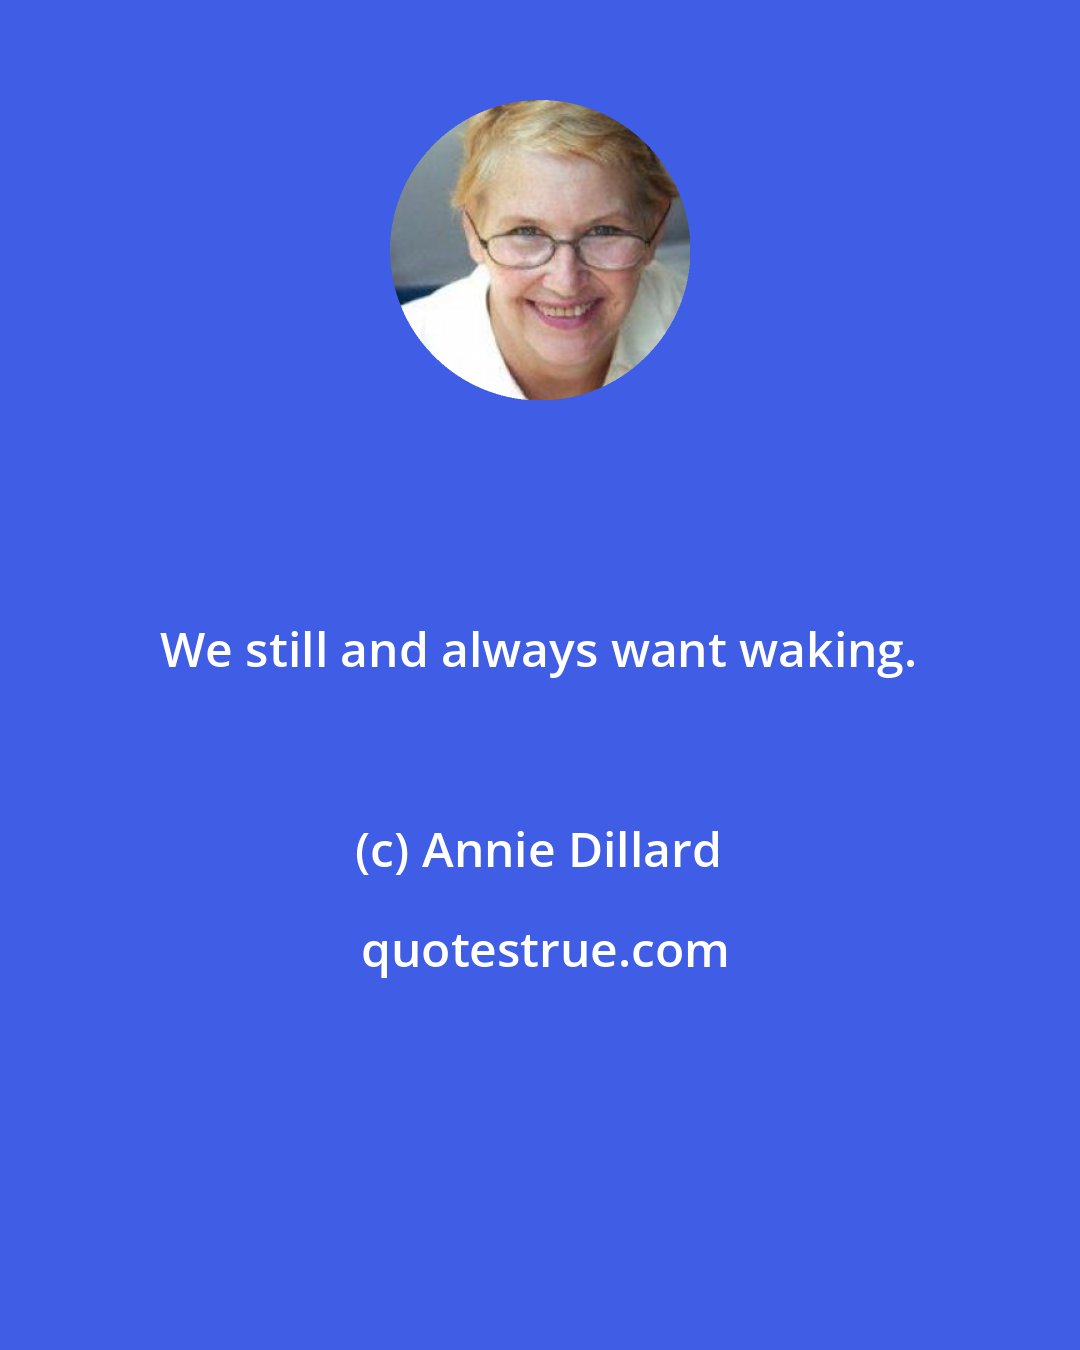 Annie Dillard: We still and always want waking.